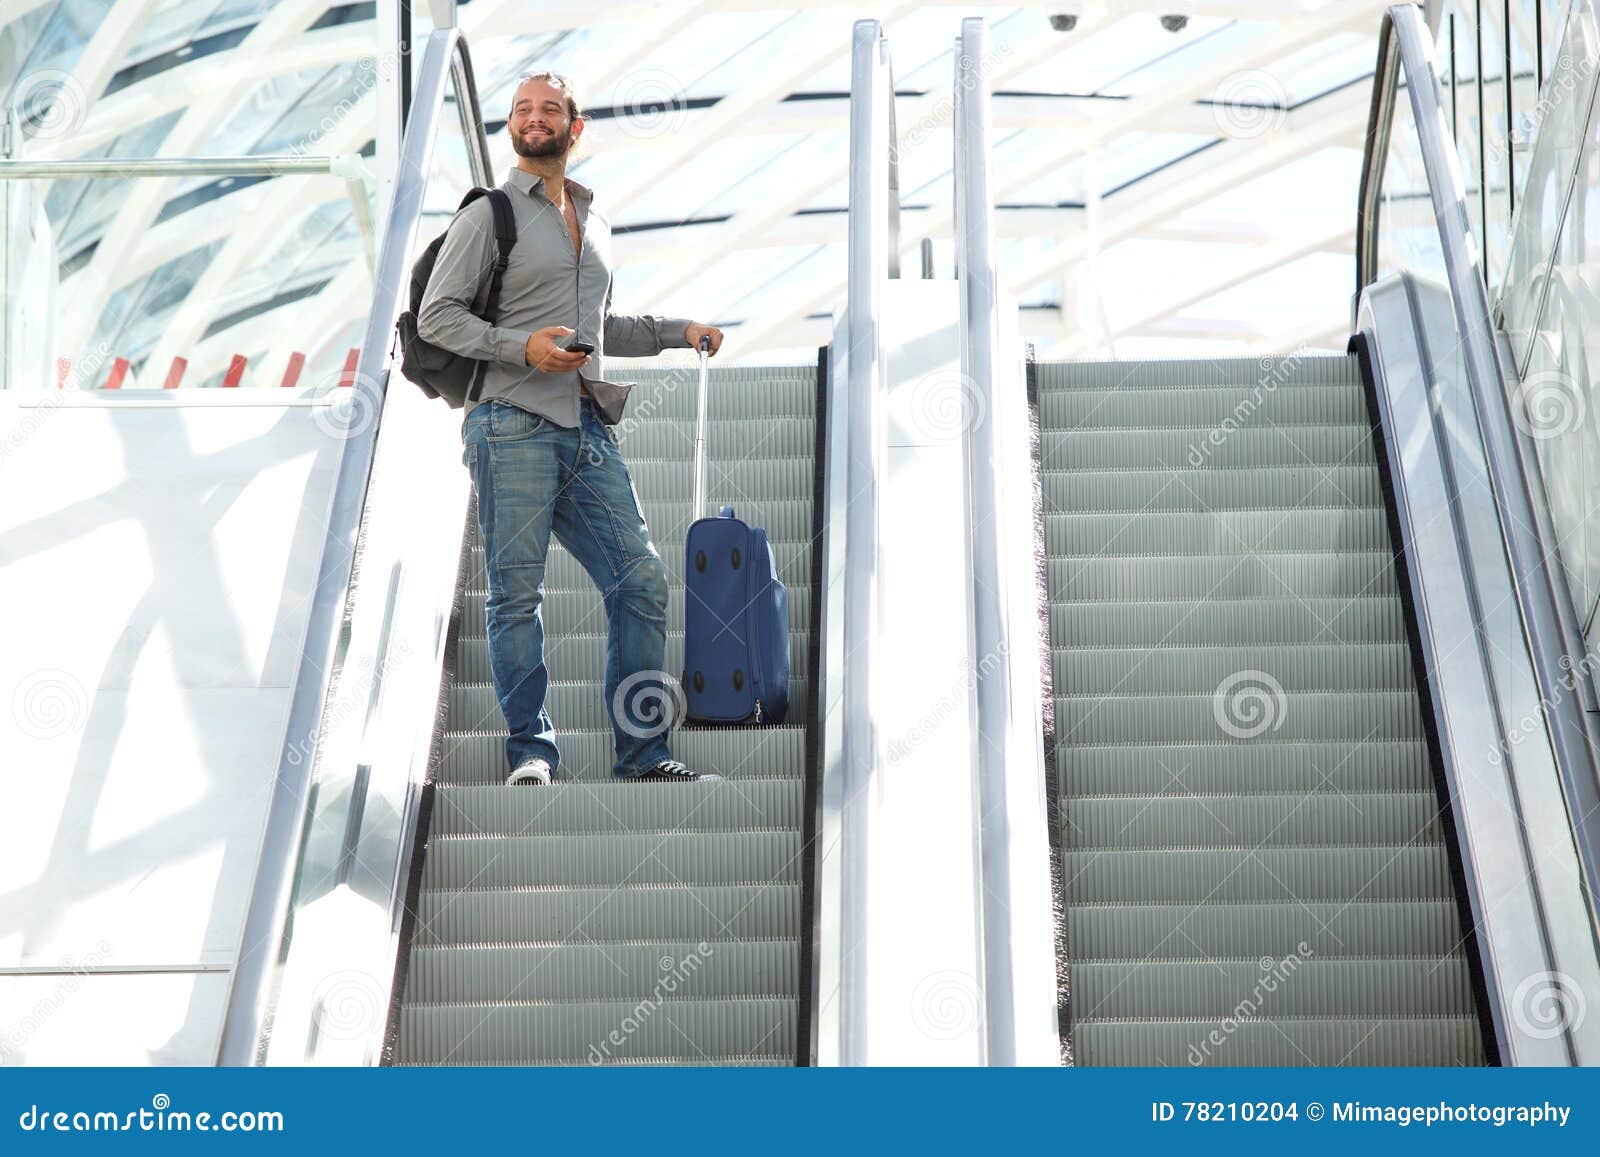 Эскалатор метрополитена поднимает неподвижно. Человек вверх на эскалаторе. Эскалатор со стоящим на нем человеком. Портрет мужчины на эскалаторе. Эскалатор и чемоданы.